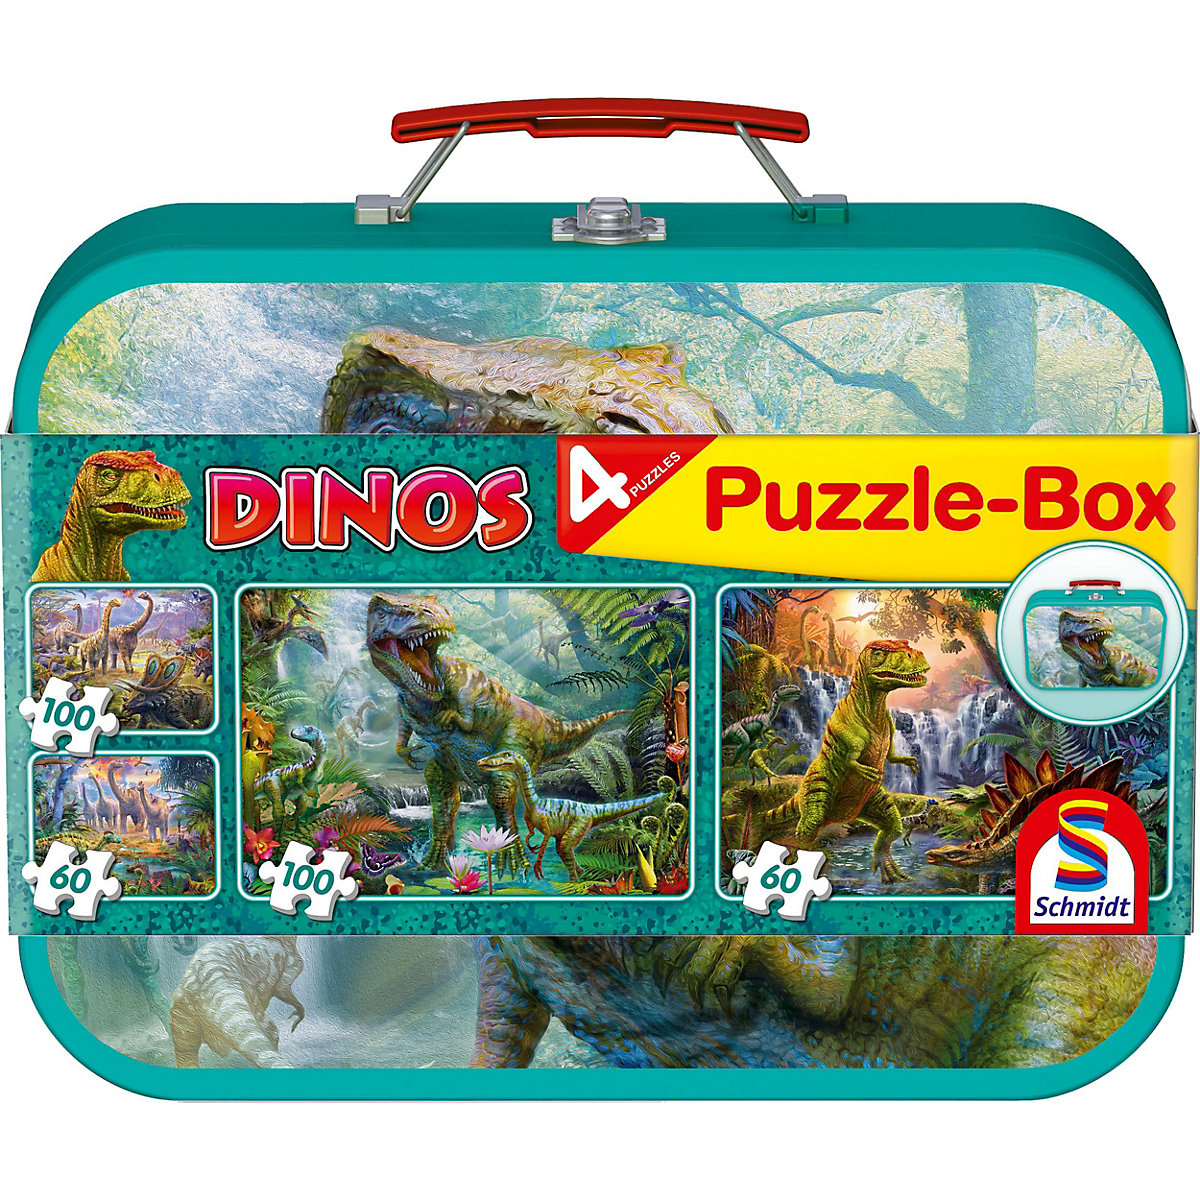 Schmidt Spiele Puzzlekoffer 2 x 60 + 2 x 100 Teile Dinos